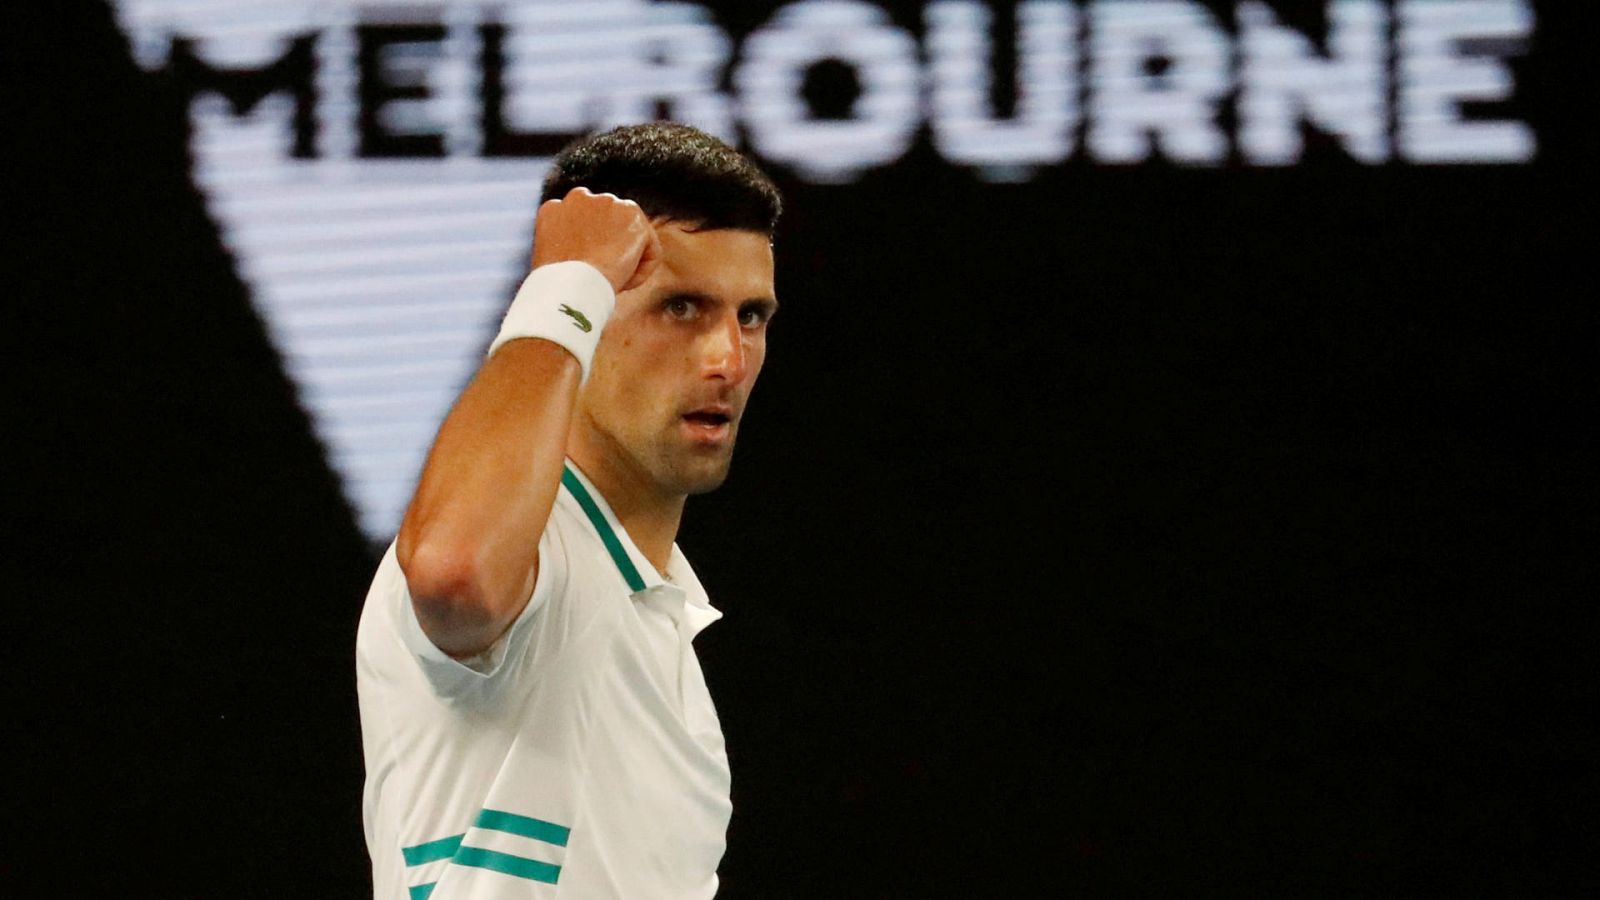 Australia solo admitirá a los tenistas vacunados: Djokovic, duda